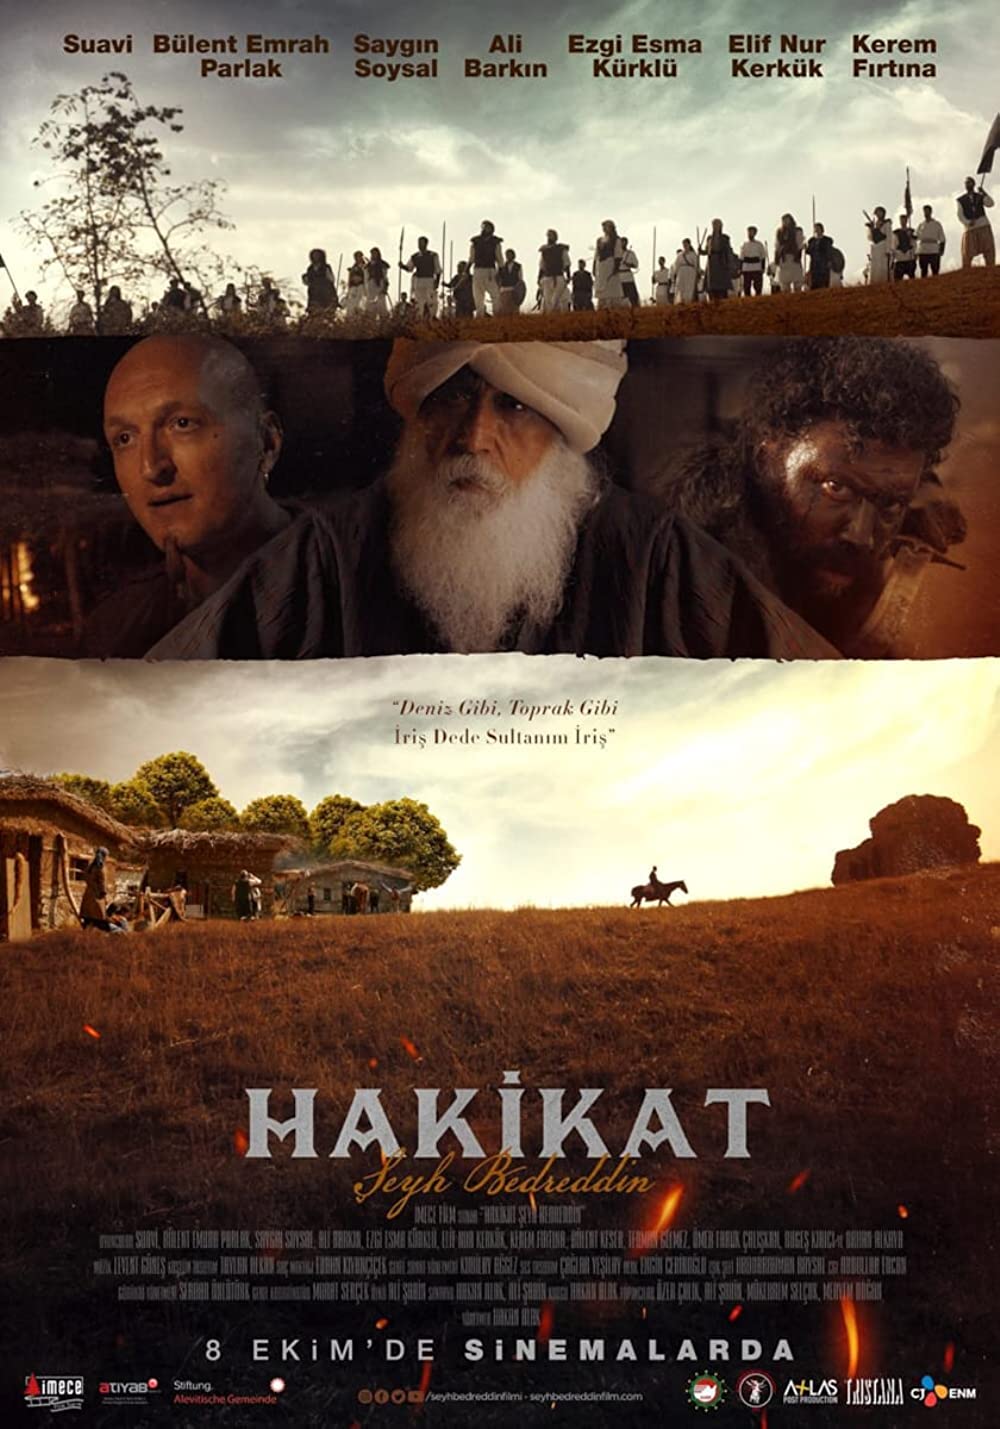 Filmbeschreibung zu Hakikat (OV)